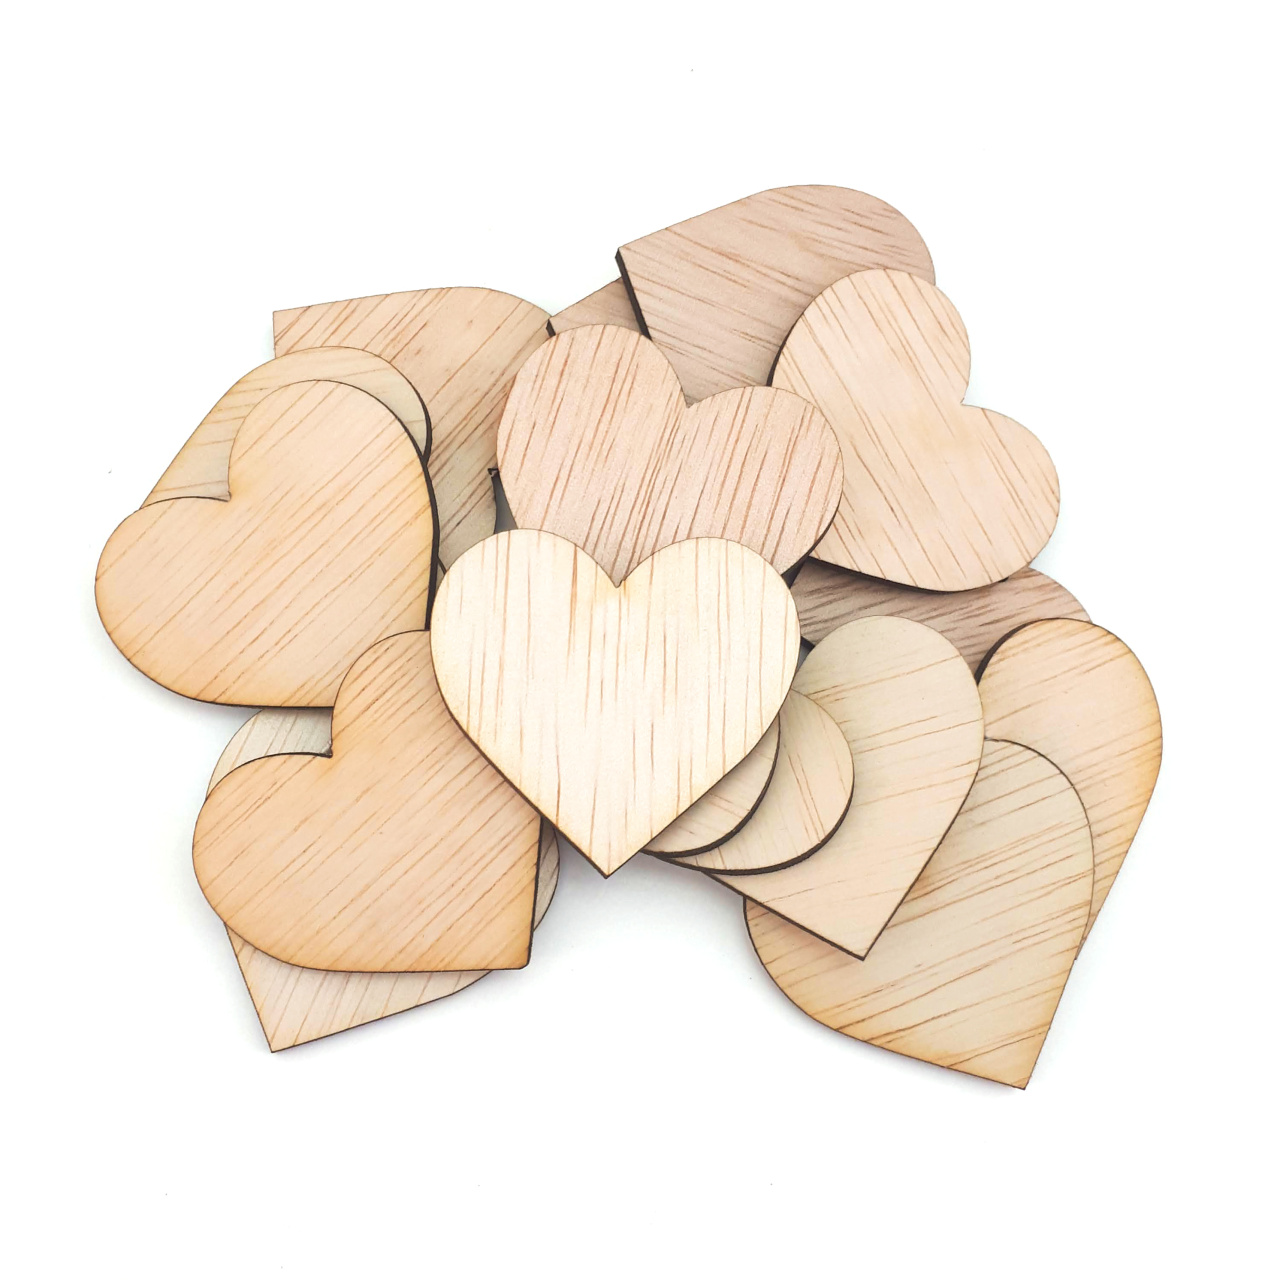 Inimă, 5,5×5 cm, placaj lemn natur :: 5 cm